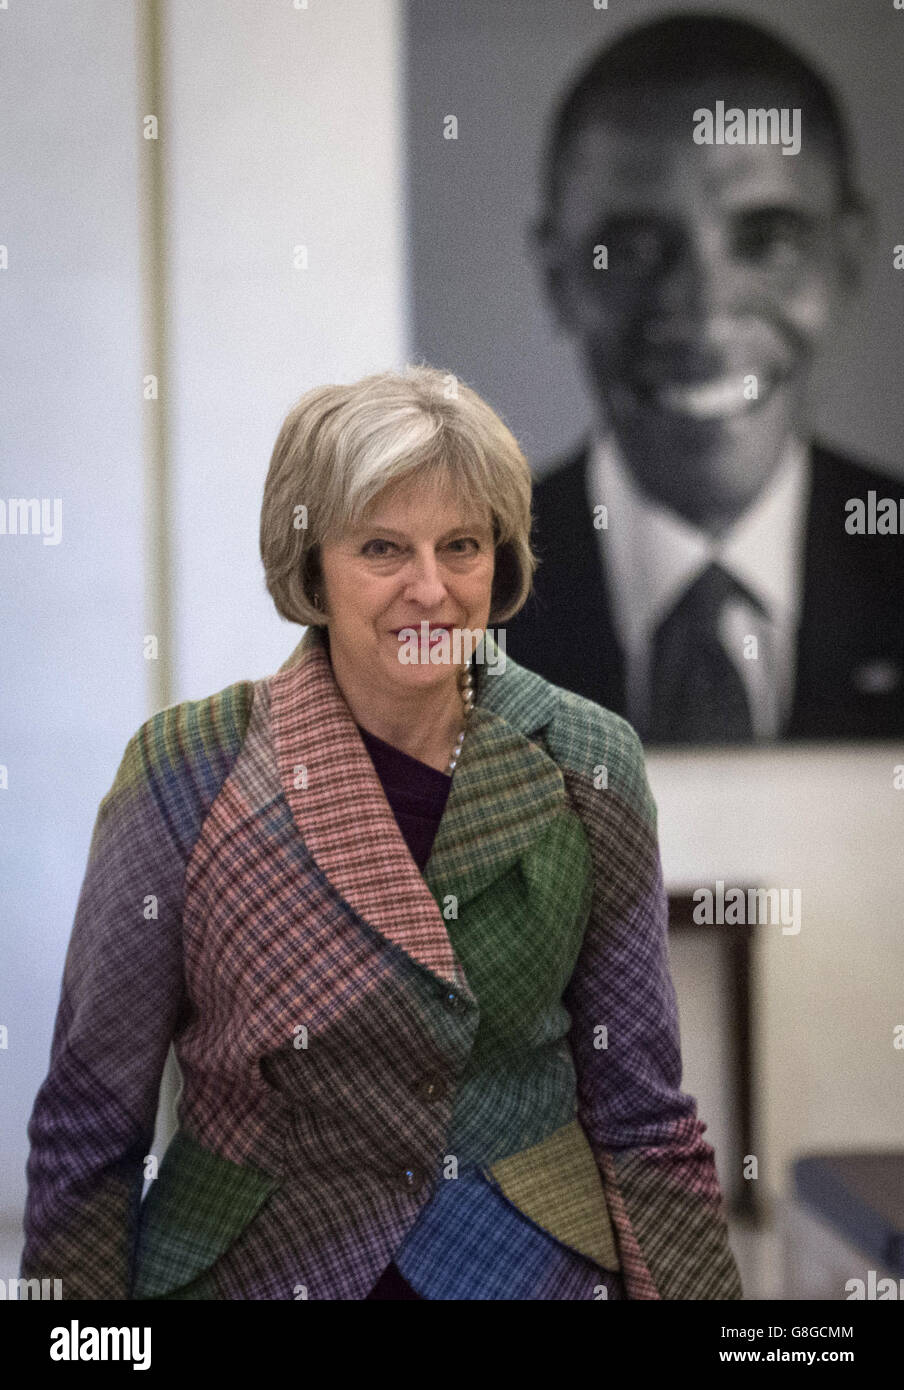 Innenministerin Theresa May in der US-Botschaft in London, wo sie mit US-Justizministerin Loretta Lynch über die transatlantische Zusammenarbeit bei der Bekämpfung der modernen Sklaverei sprach und eine Ankündigung über weitere Hilfe für Opfer der modernen Sklaverei in Großbritannien machte. Stockfoto